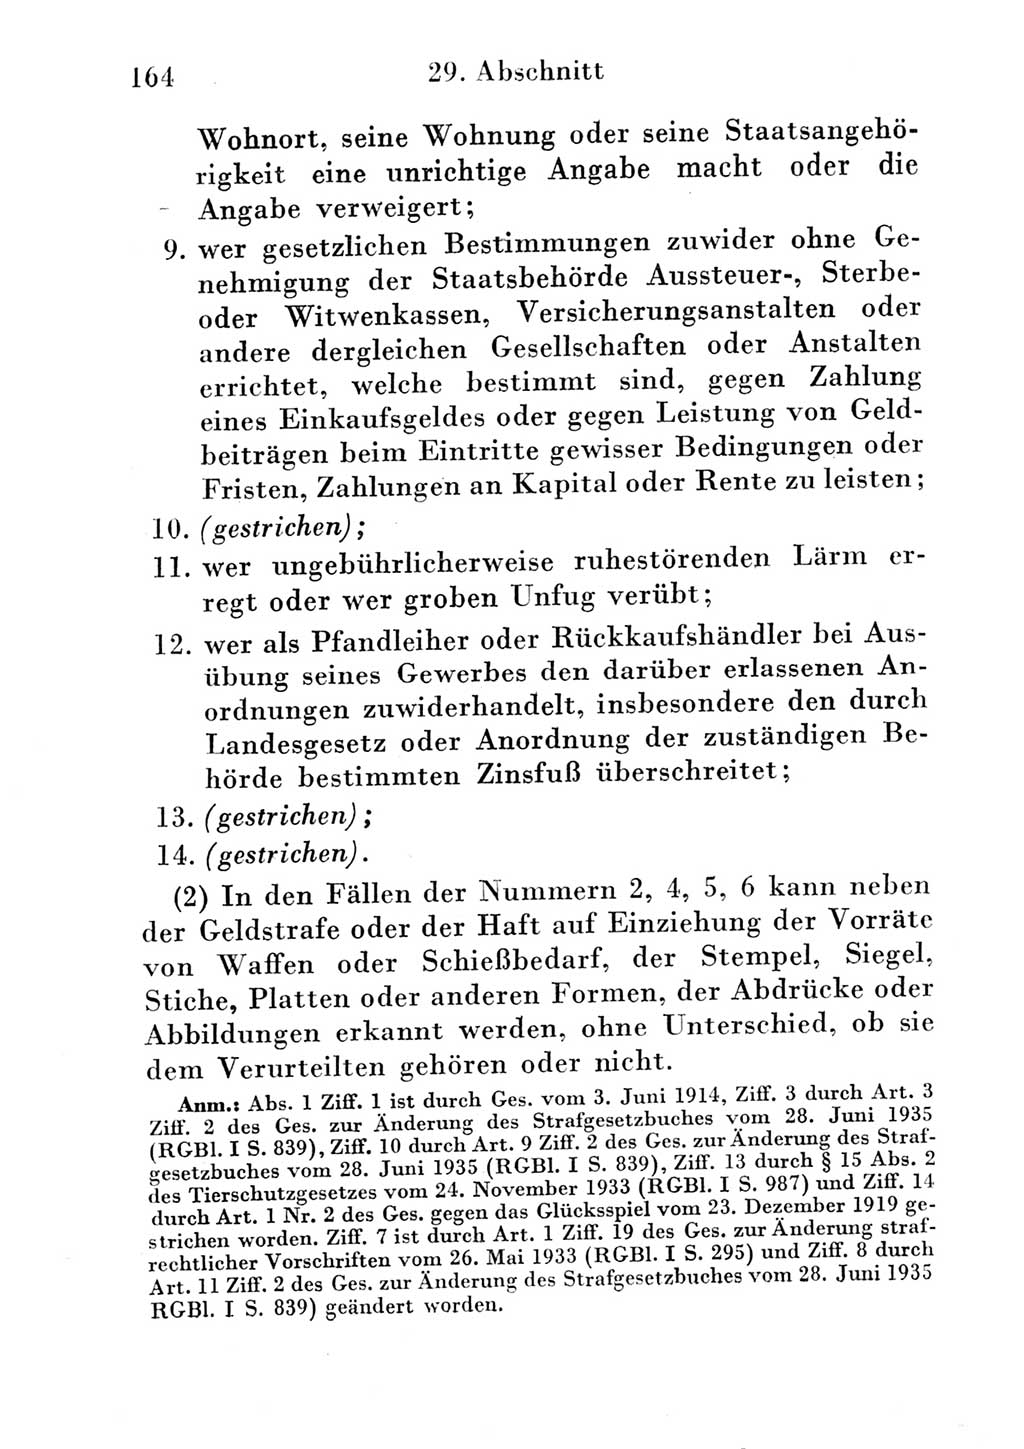 Strafgesetzbuch (StGB) und andere Strafgesetze [Deutsche Demokratische Republik (DDR)] 1951, Seite 164 (StGB Strafges. DDR 1951, S. 164)